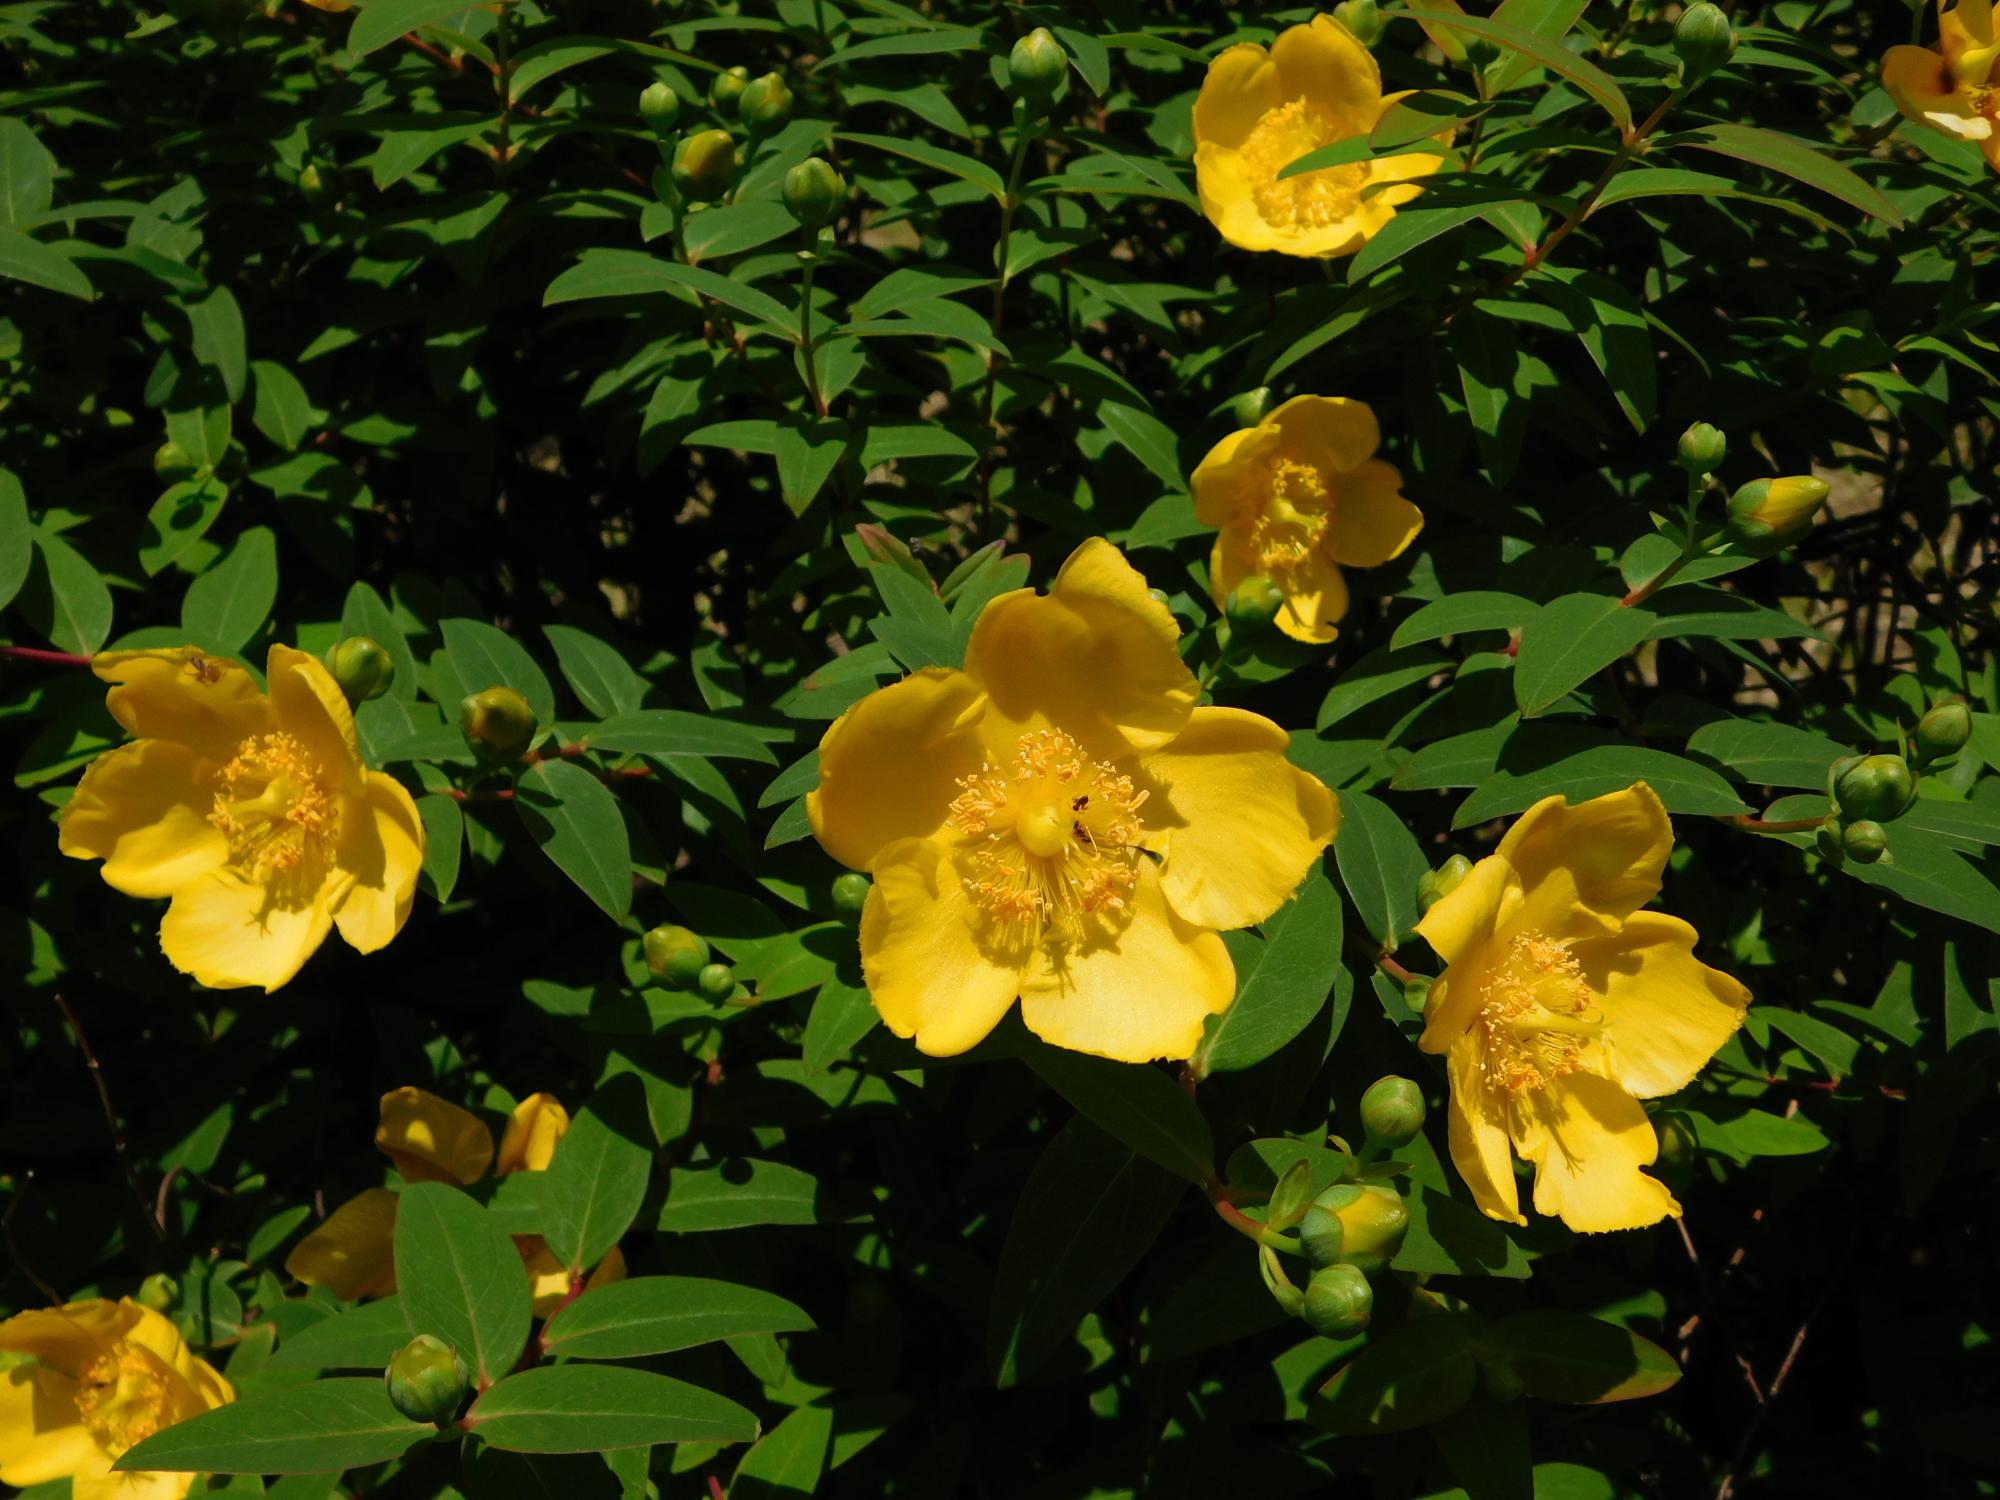 公園の沿道沿いの各所でキンシバイの黄色い花が見られます。まだつぼみの状態が多いので、花の見頃はこれからというところです。